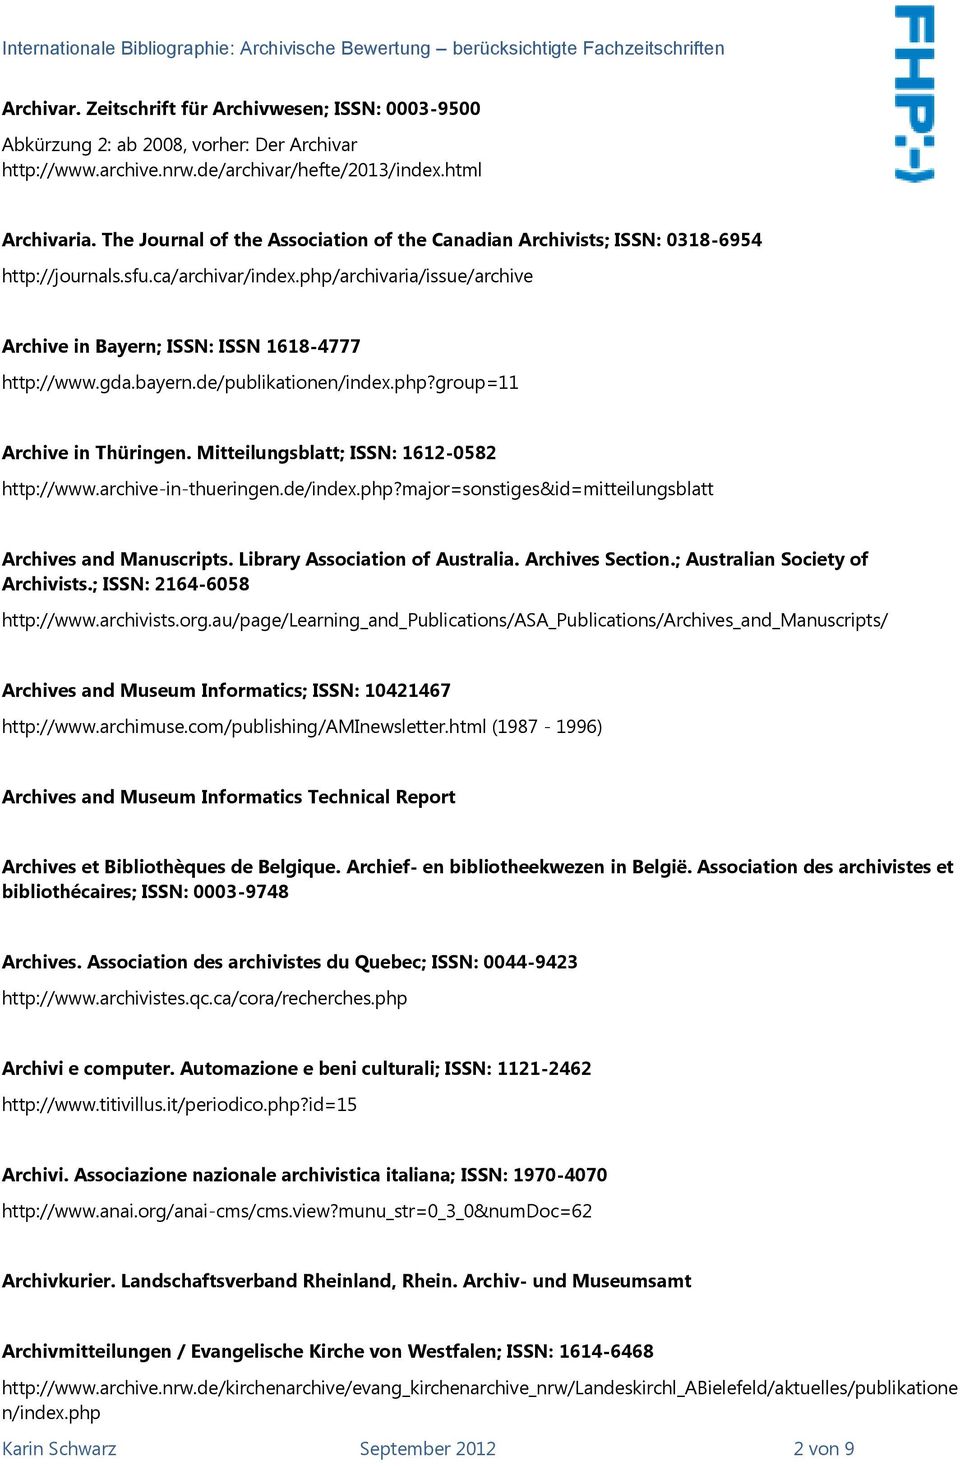 bayern.de/publikationen/index.php?group=11 Archive in Thüringen. Mitteilungsblatt; ISSN: 1612-0582 http://www.archive-in-thueringen.de/index.php?major=sonstiges&id=mitteilungsblatt Archives and Manuscripts.